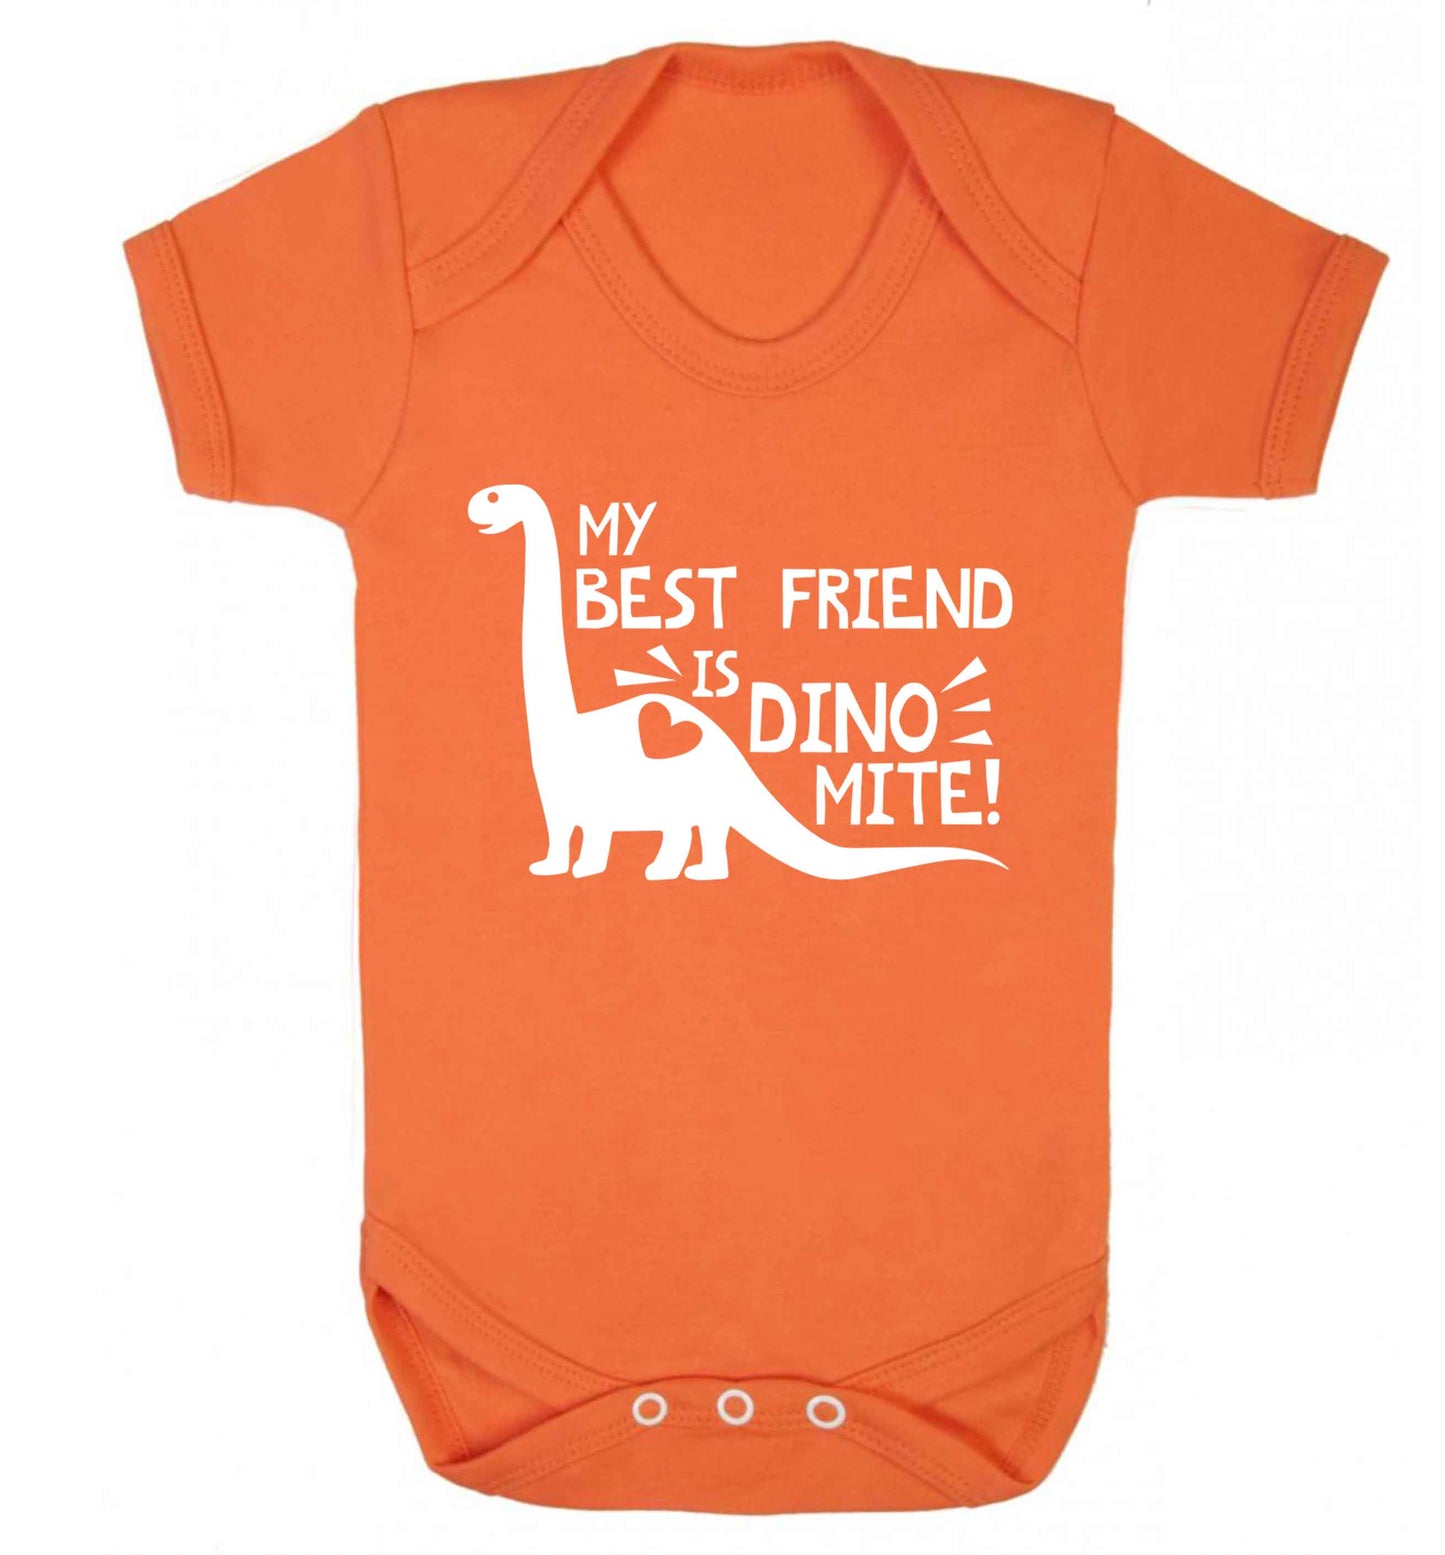 My best friend is dinomite! Baby Vest orange 18-24 months